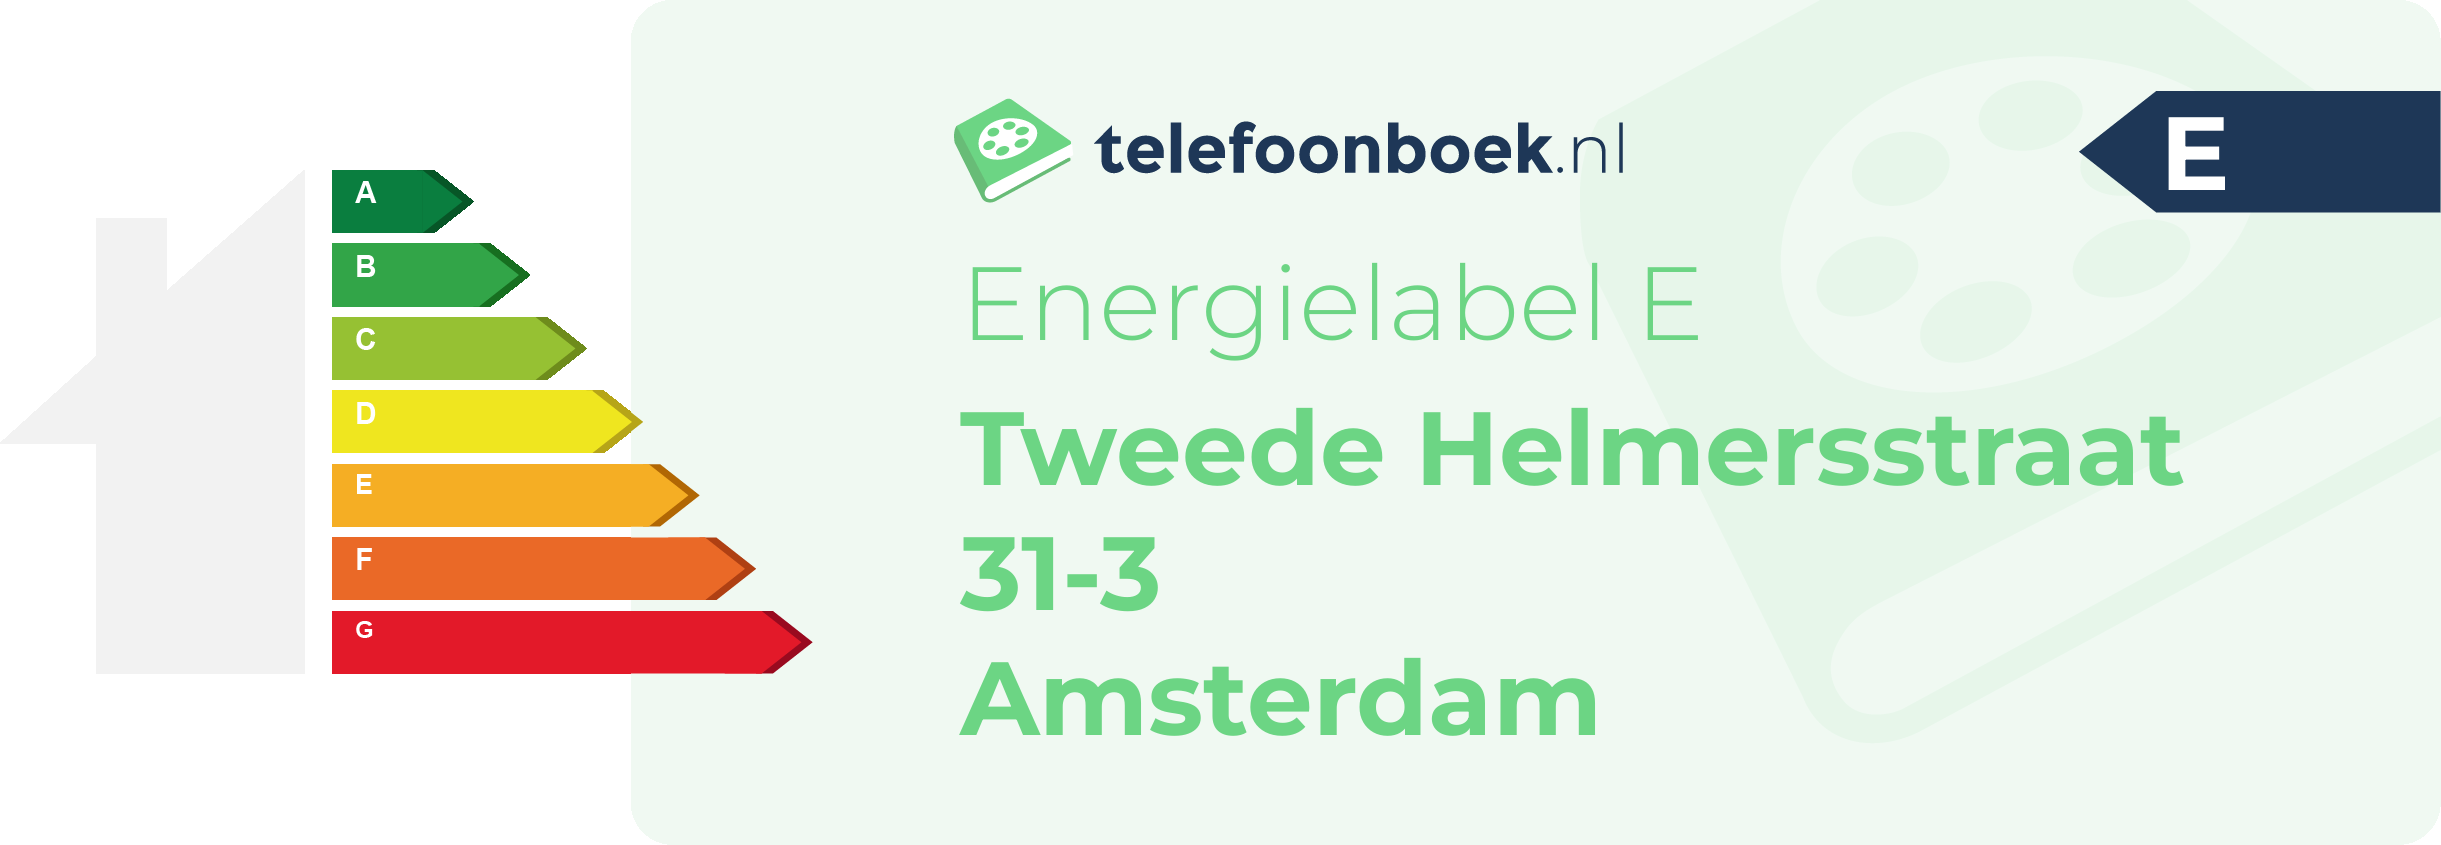 Energielabel Tweede Helmersstraat 31-3 Amsterdam